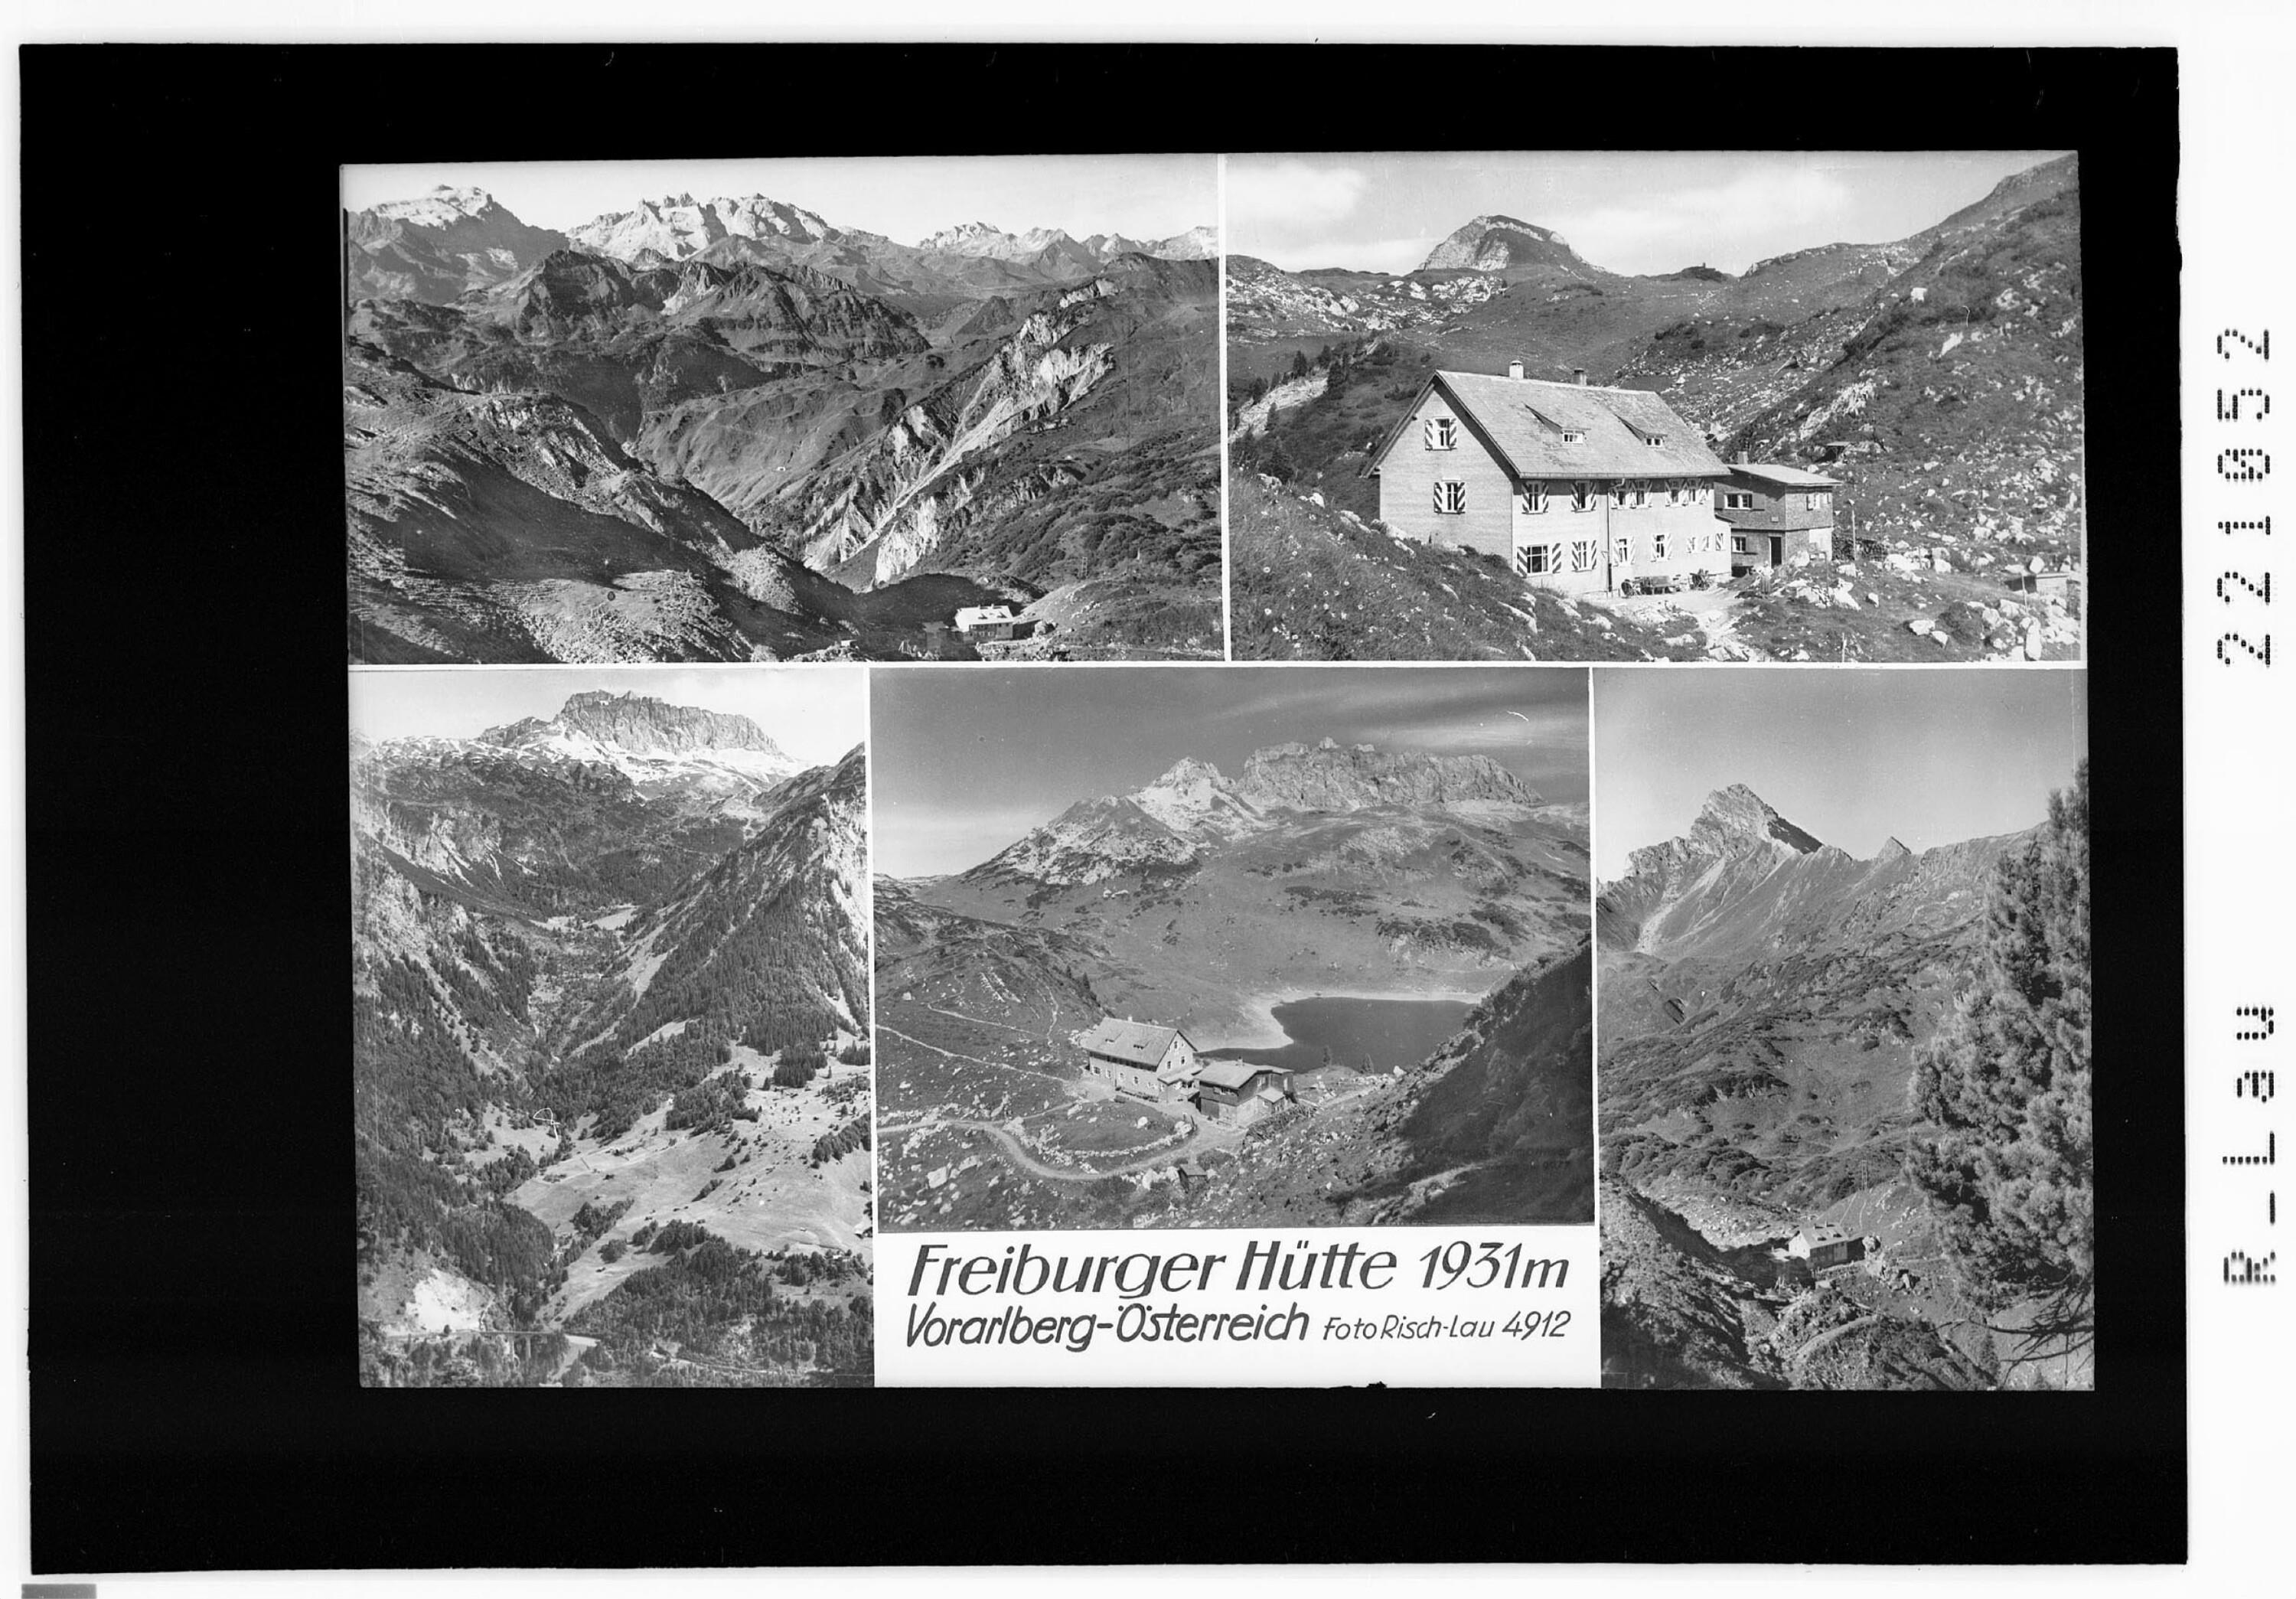 Freiburger Hütte 1931 m / Vorarlberg - Österreich></div>


    <hr>
    <div class=